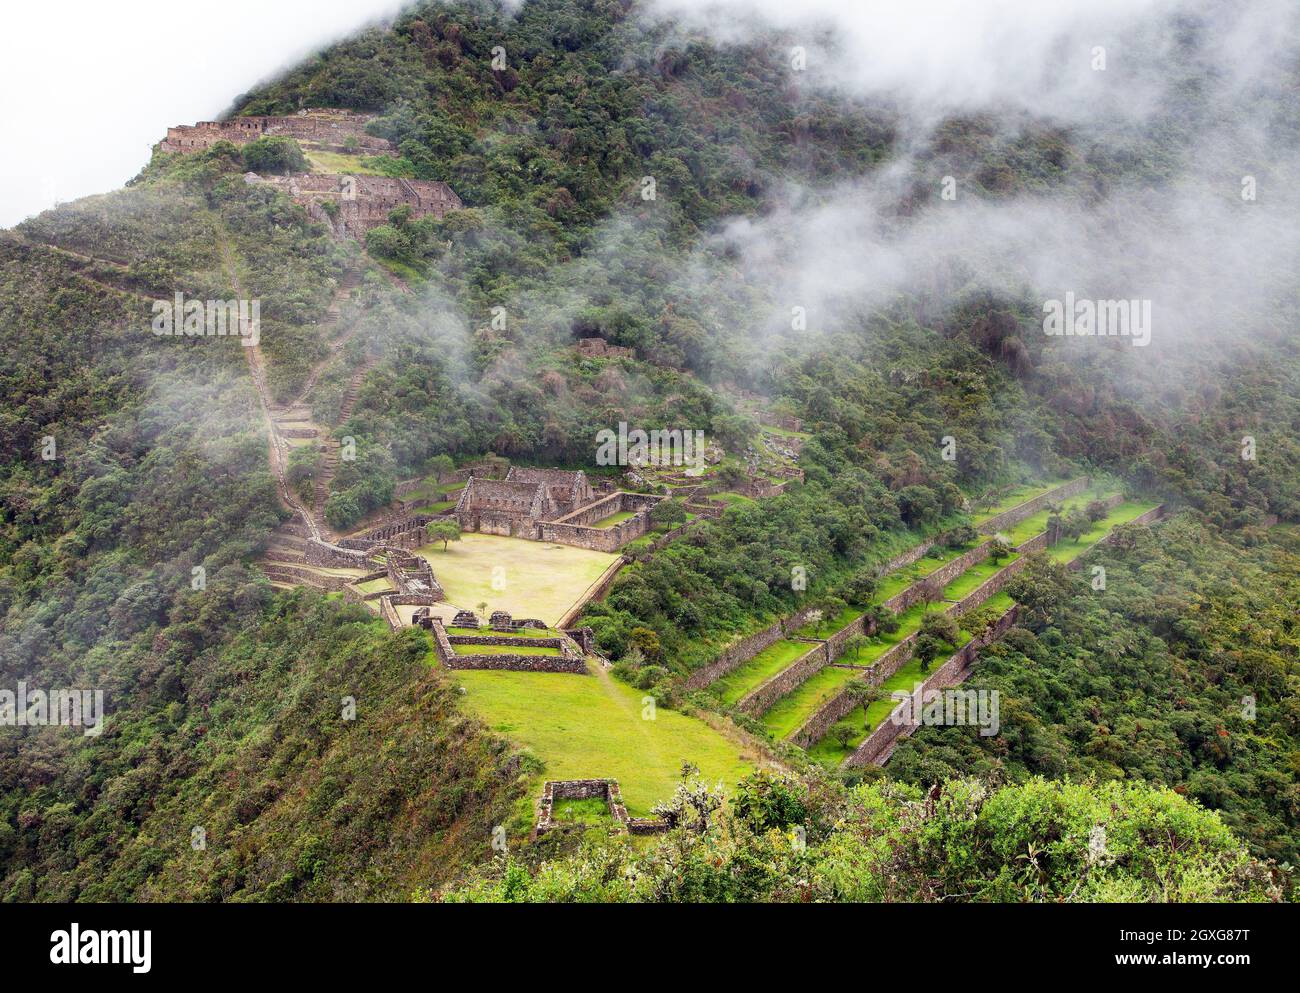 Choquequirao, one of the best Inca ruins in Peru. Choquequirao Inca trekking trail near Machu Picchu. Cuzco region in Peru Stock Photo